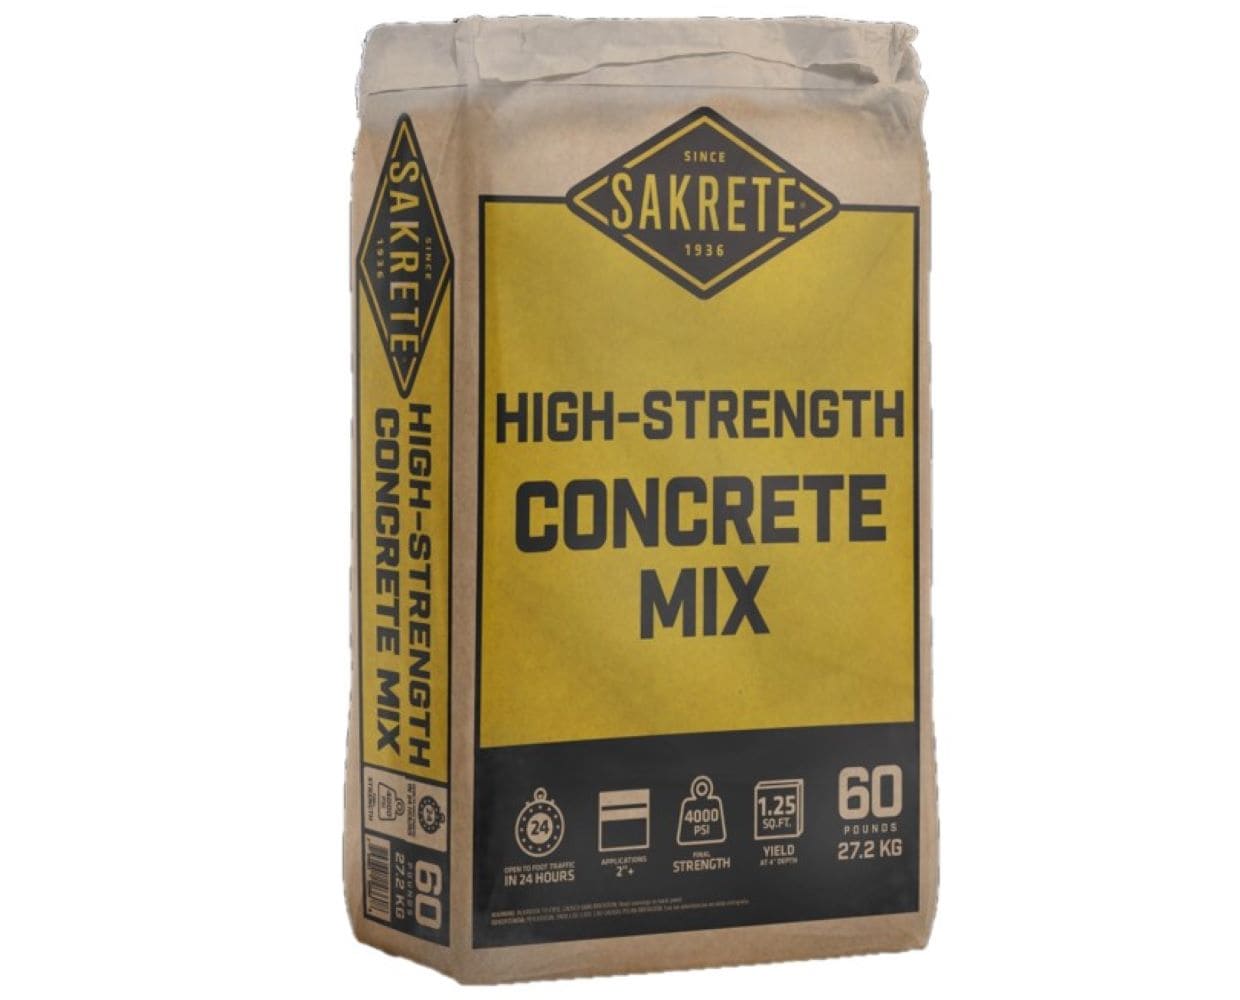 QUIKRETE Concrete Mix (Redi-Mix) - 25kg — Warehoos